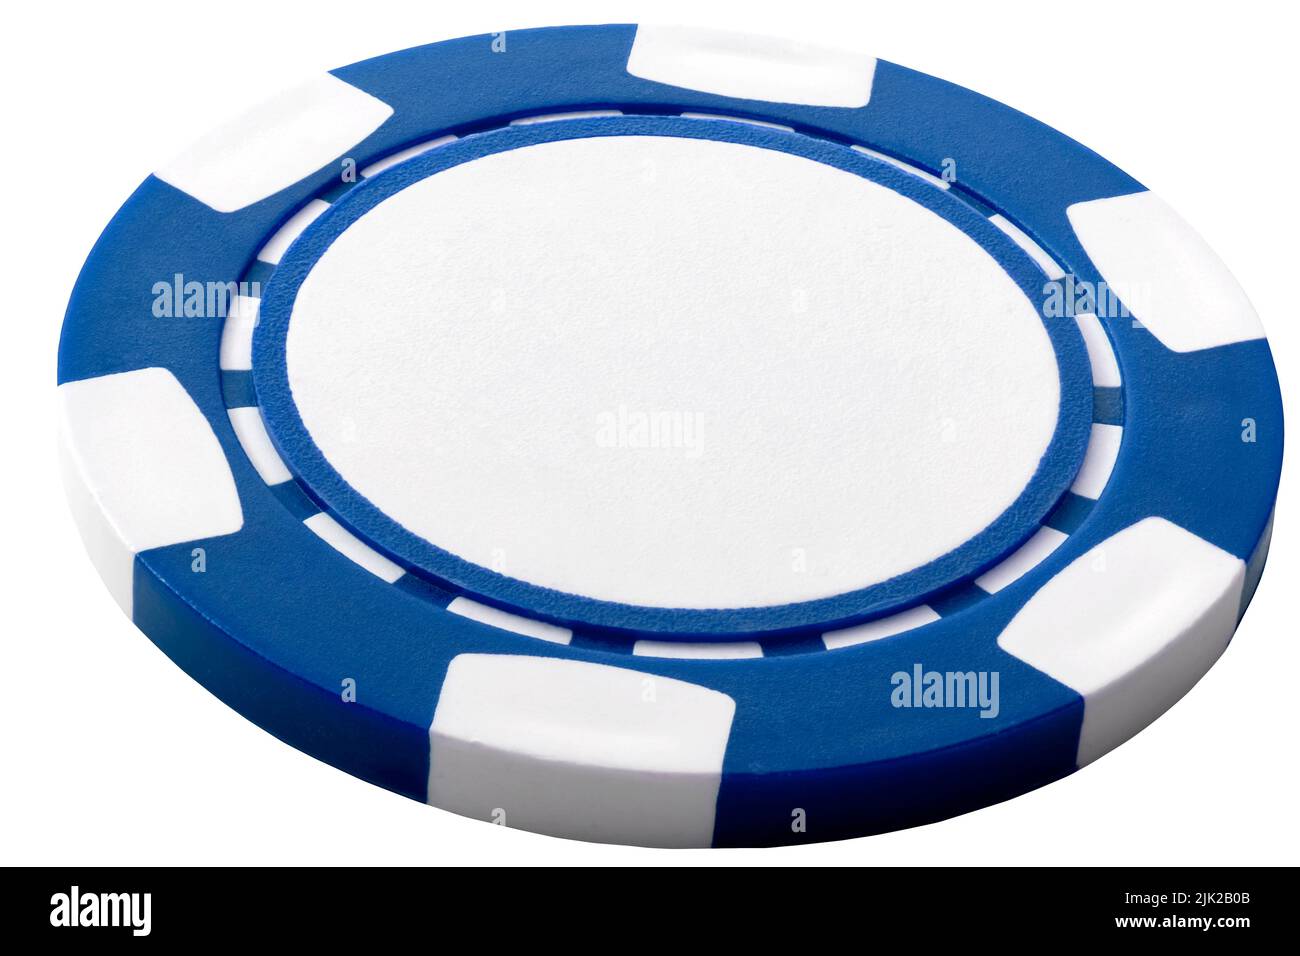 Chip generico di casino blu vuoto isolato su sfondo bianco con ritaglio percorso e copy space concept per il gioco d'azzardo, scommessa vincente e rischioso gambl Foto Stock